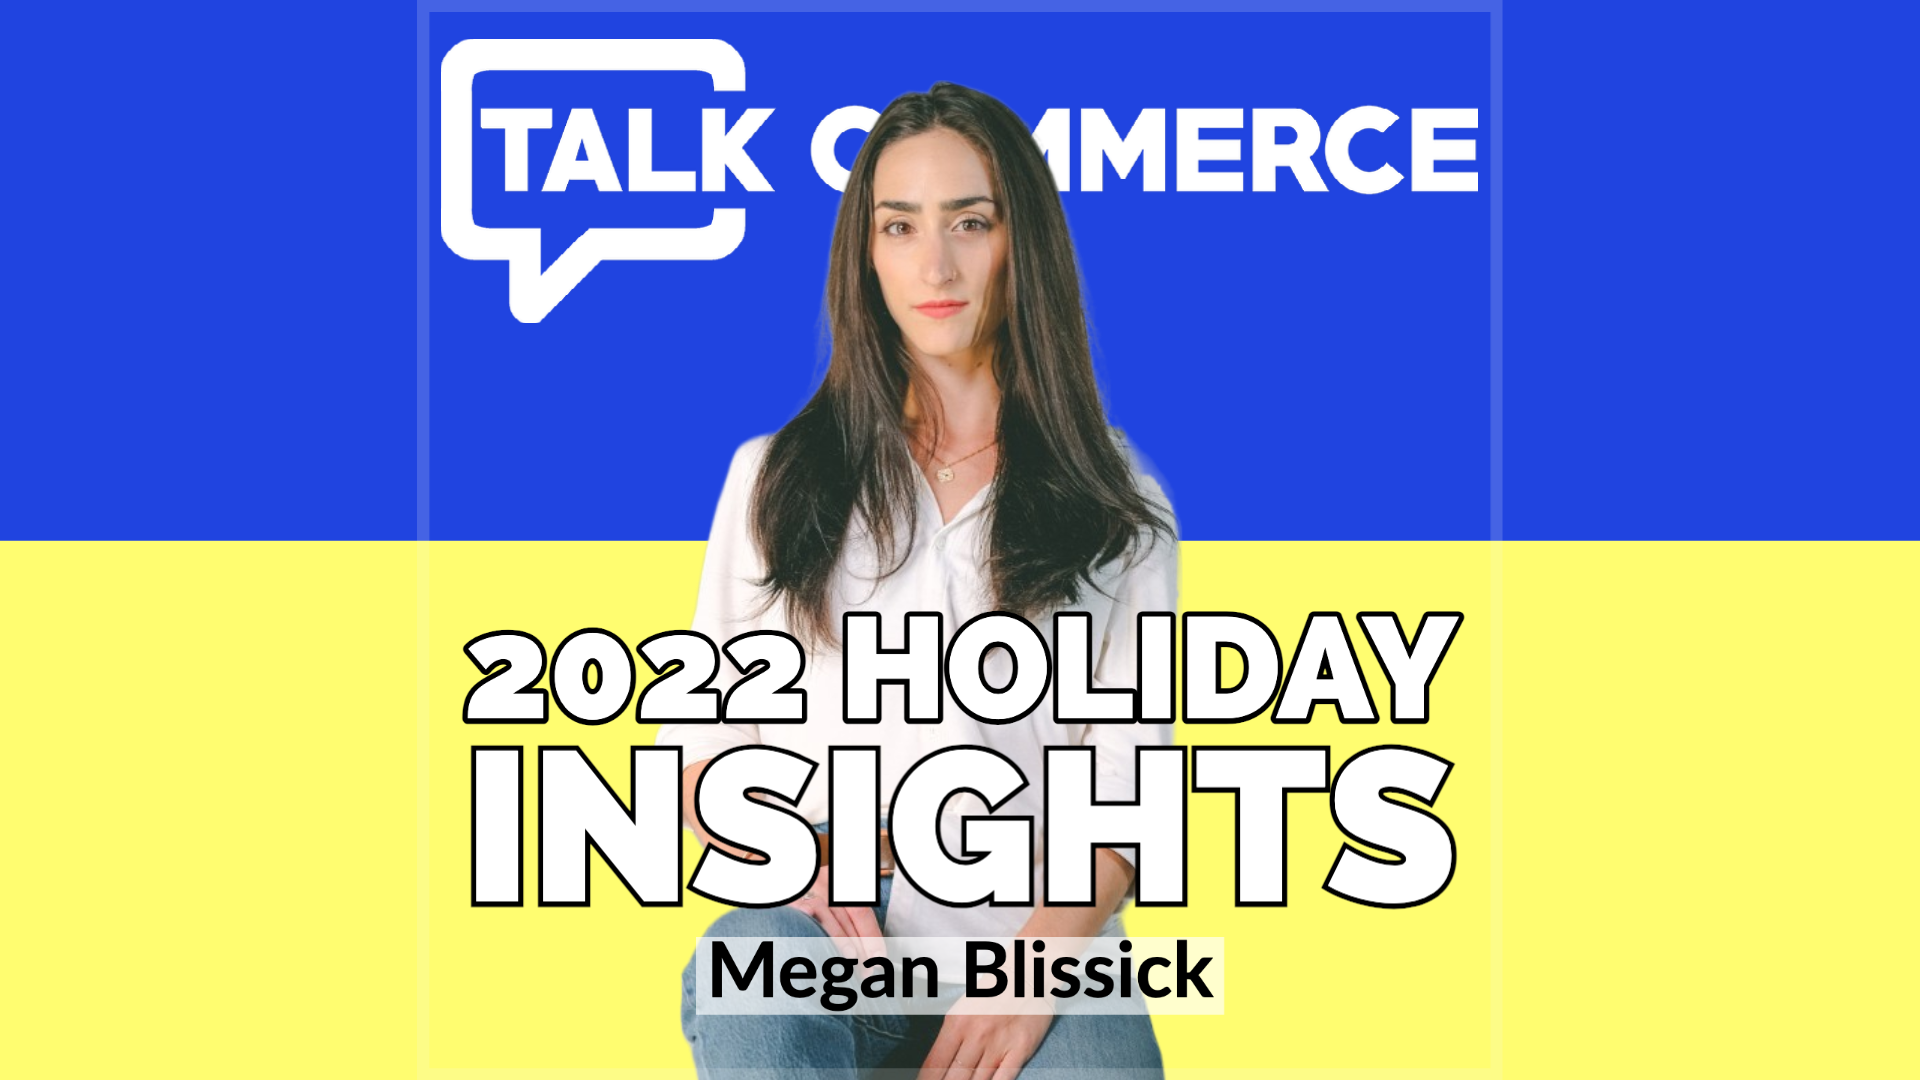 Talk-Commerce Megan Blissick